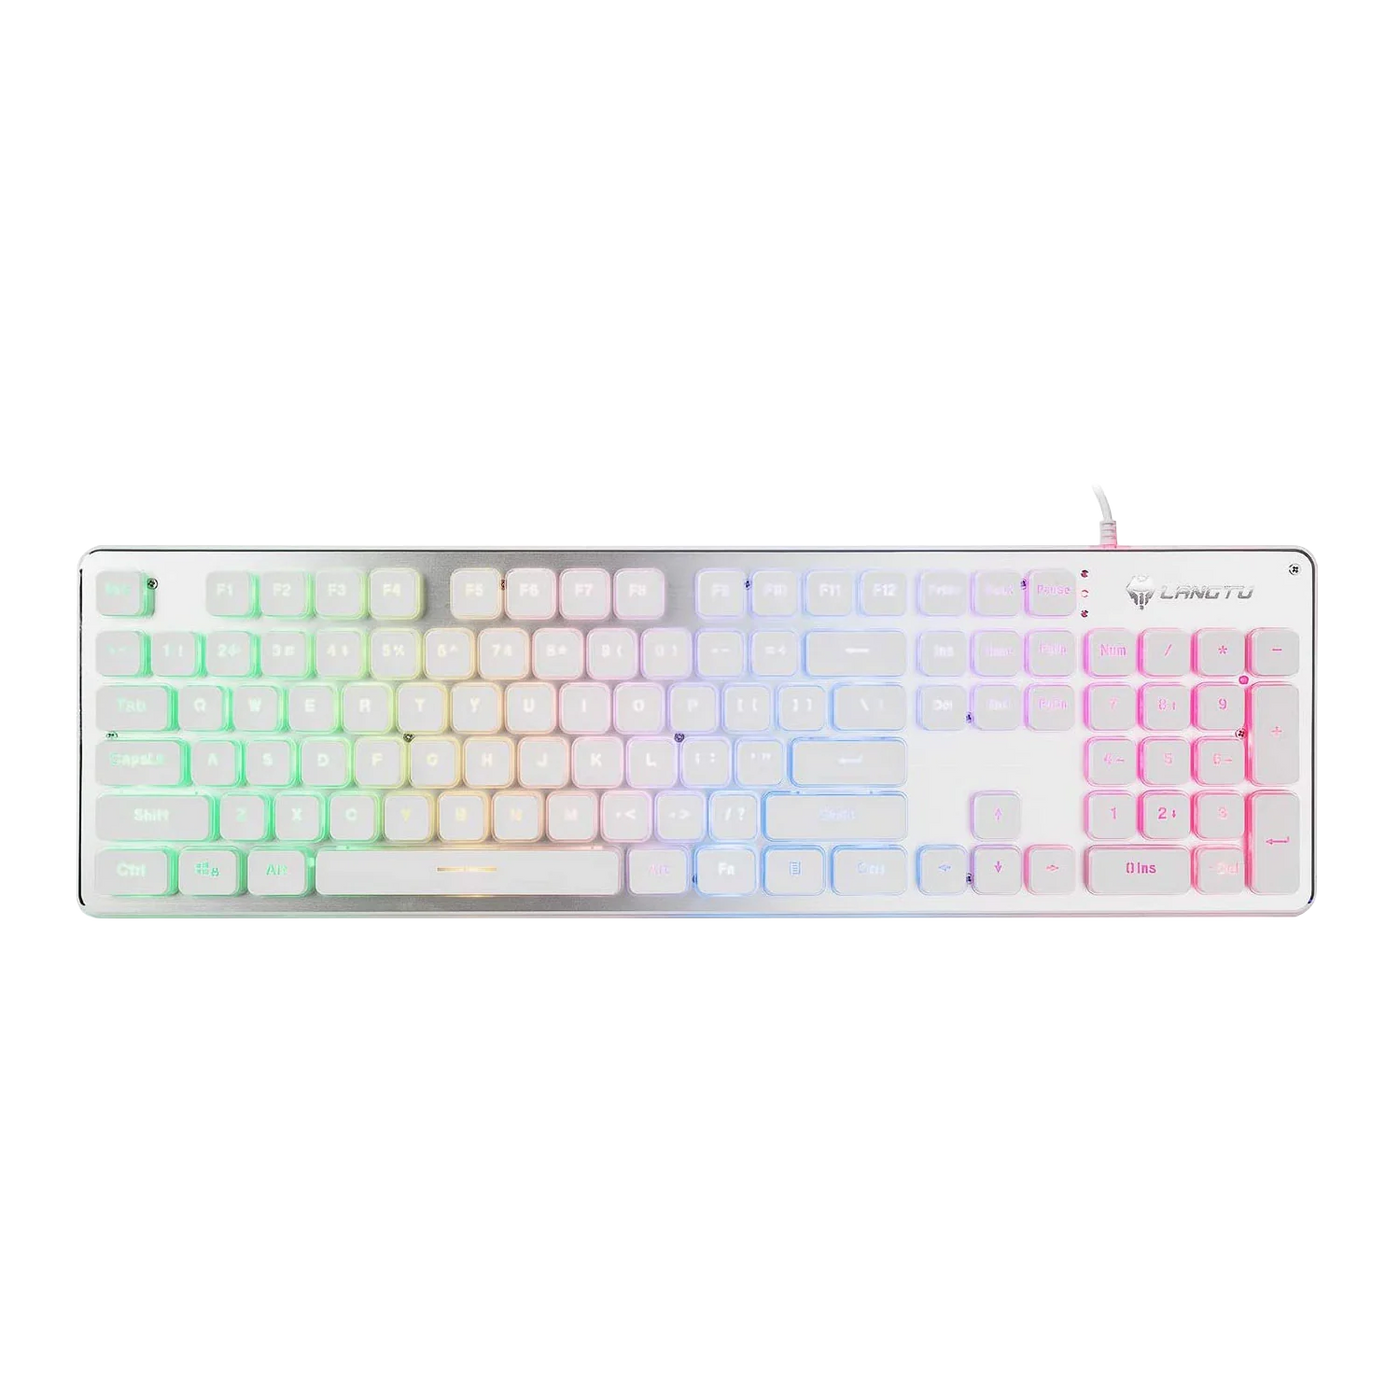 <transcy>LANGTU L1 Regenbogen Hintergrundlicht Komplettmetallgehäuse 104-Tasten Anti-ghosting Membran Tastatur Weiß/Silber</transcy>